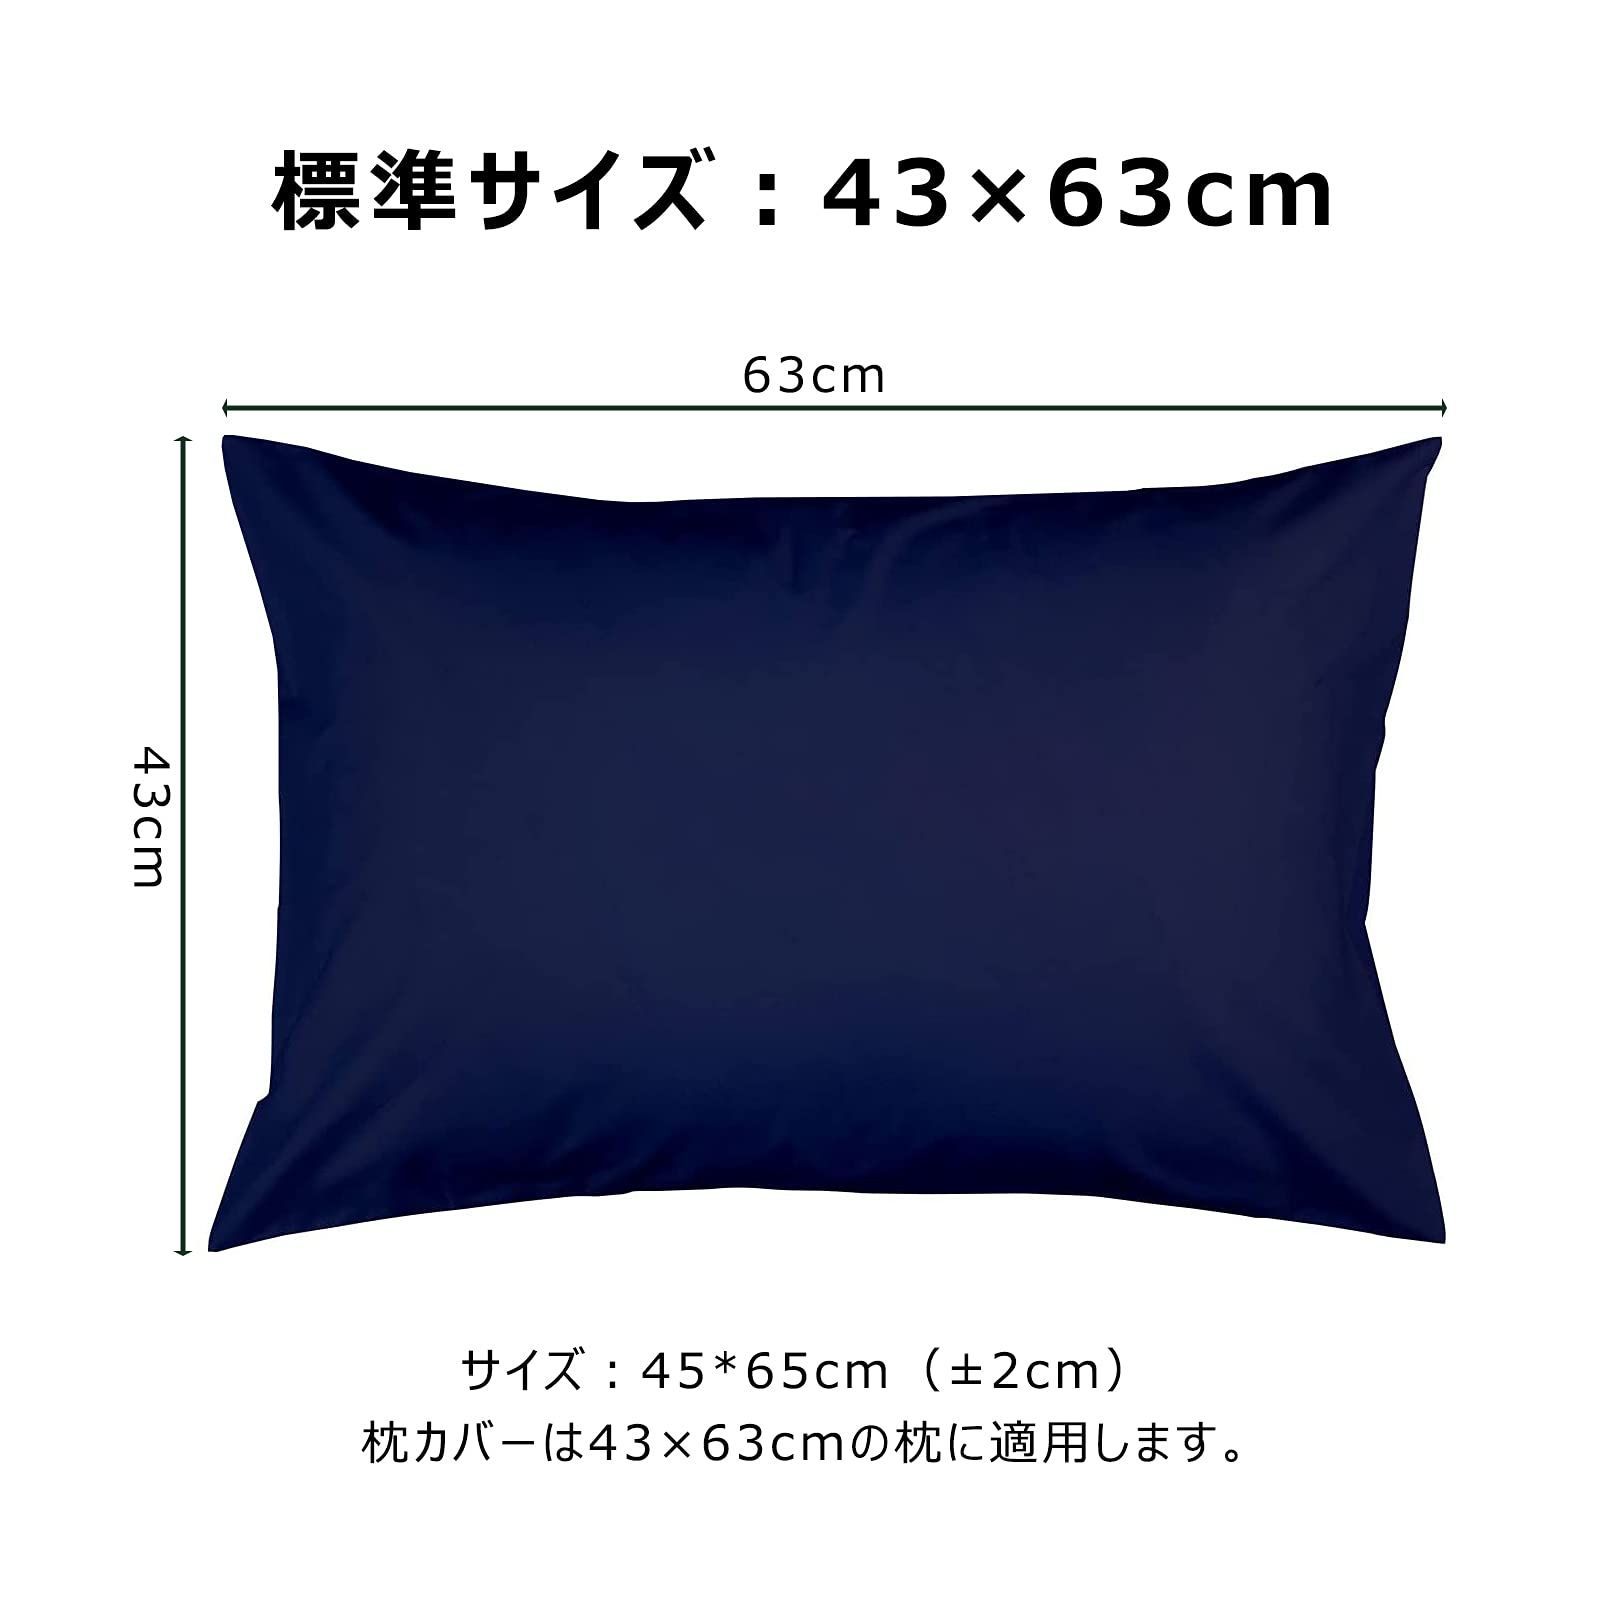 代引き不可 Umi枕カバー 2枚セット 防臭 防ダニ 43 63cm ネイビー